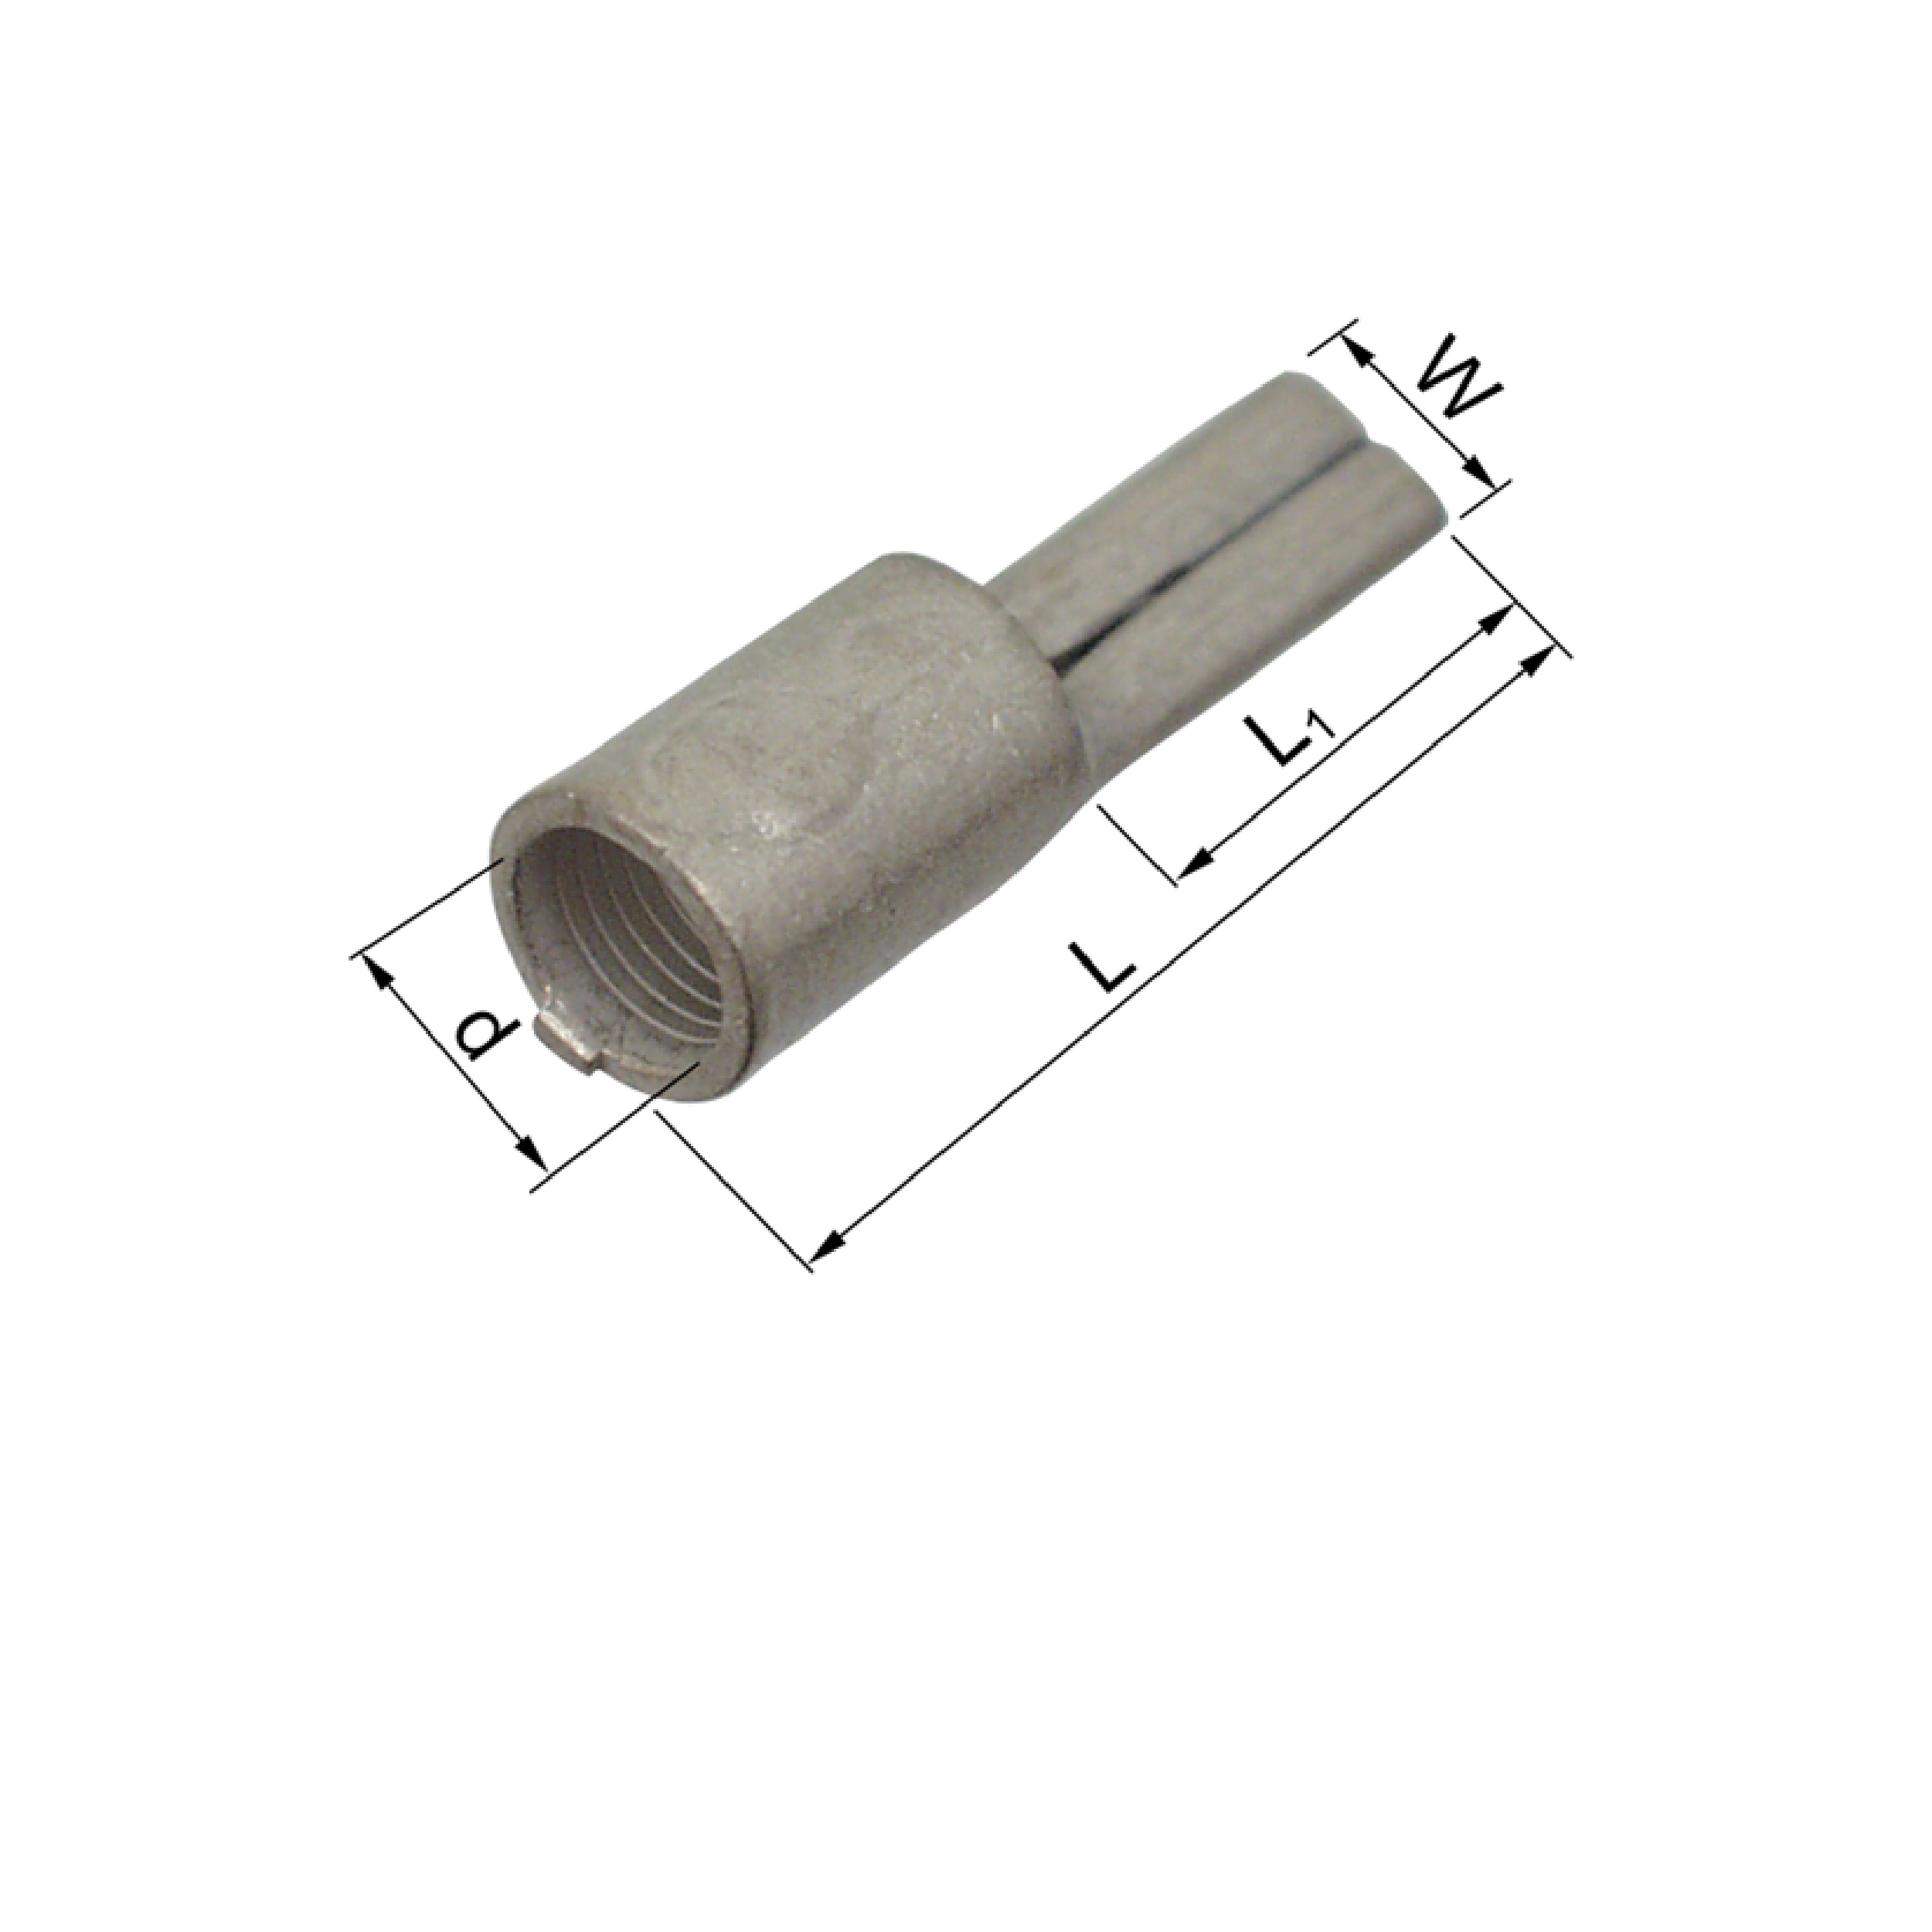 Elpress Copper Pin Terminals DIN 46230 10-95mm²